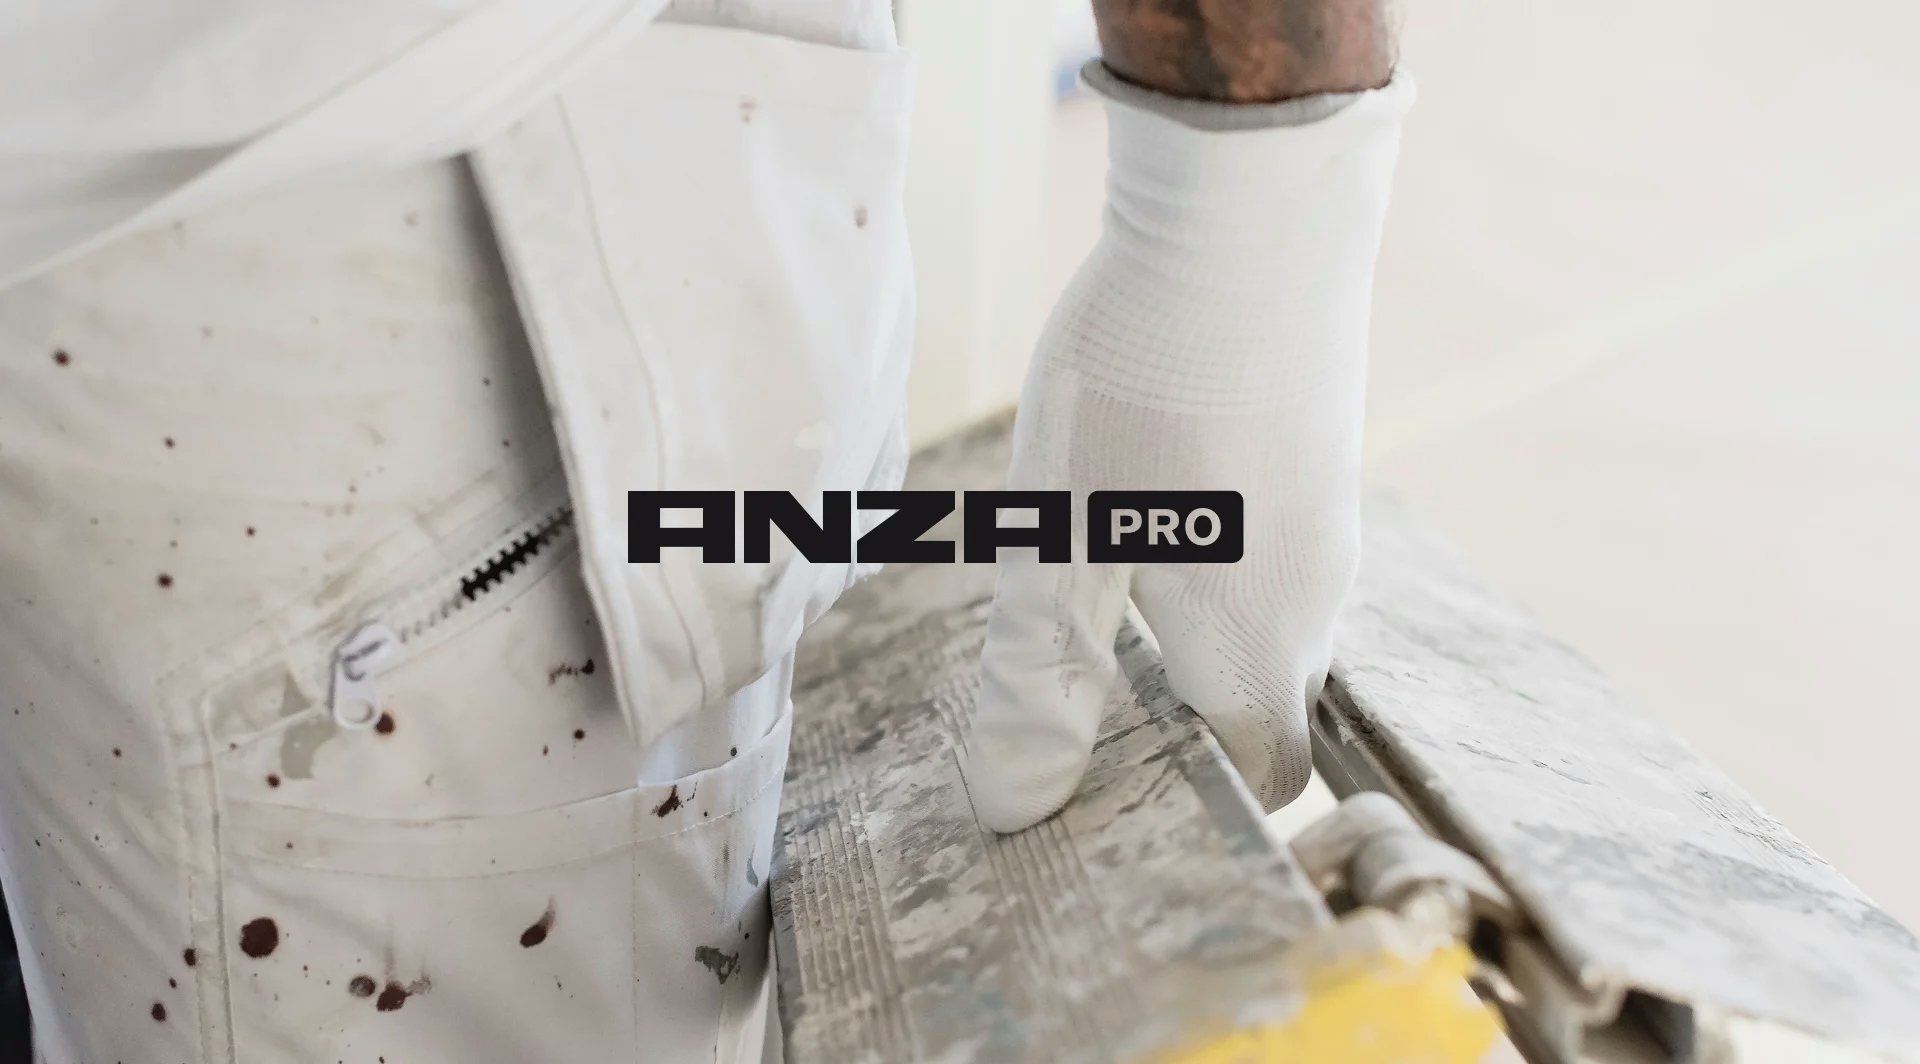 Anza Pro's logga över en bild på smutsiga målarbyxor och en hand som håller en smutsig stege